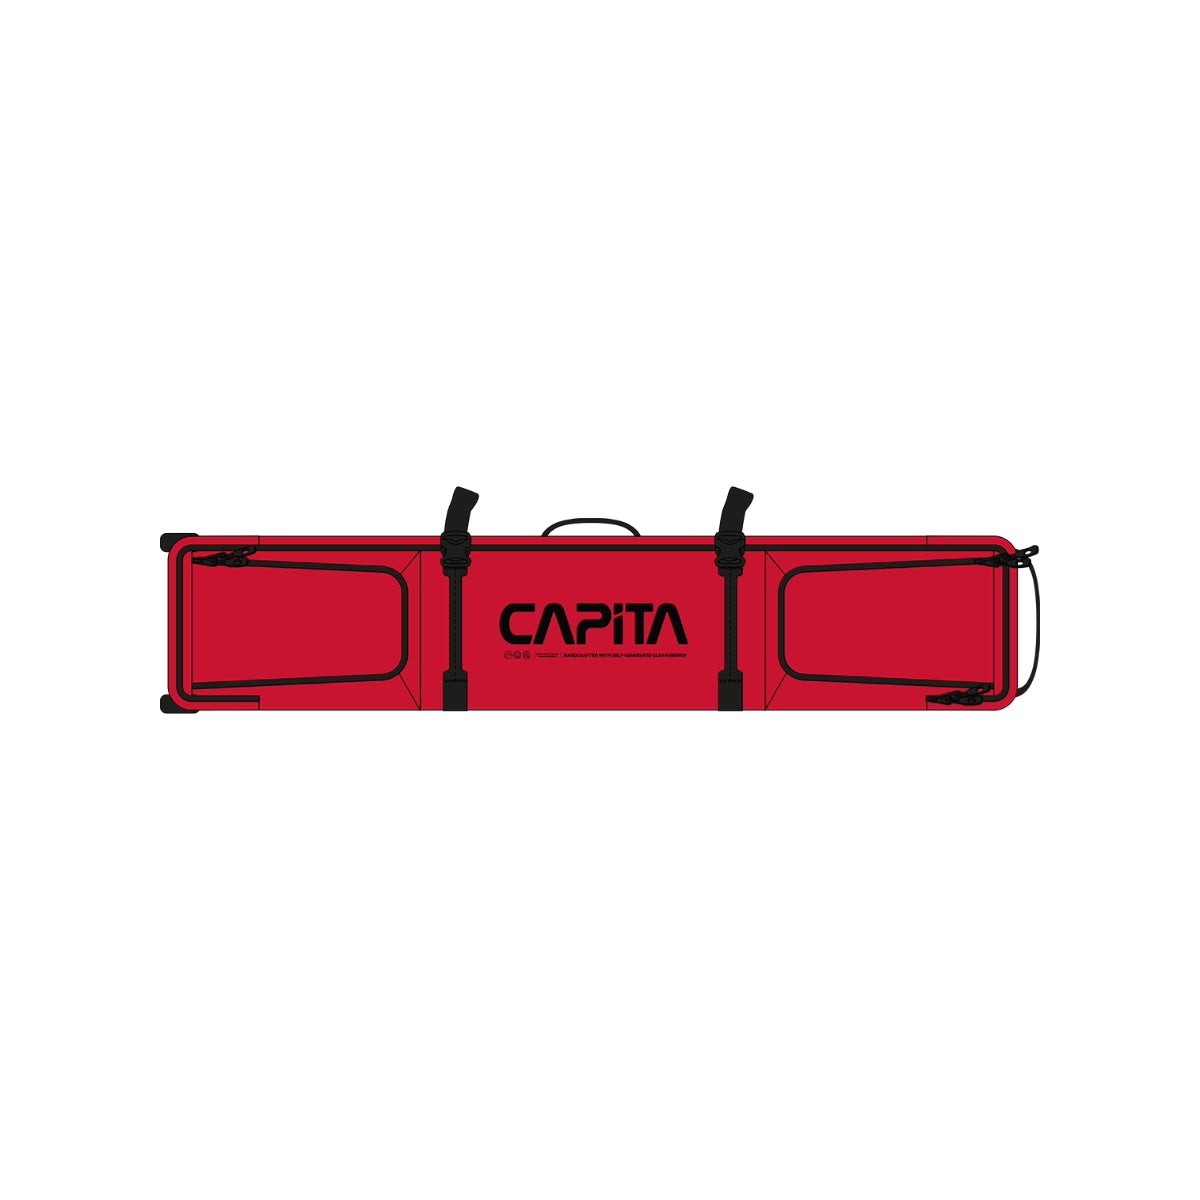 Union Binding - Wheeled Board Bag - CAPiTA - Red